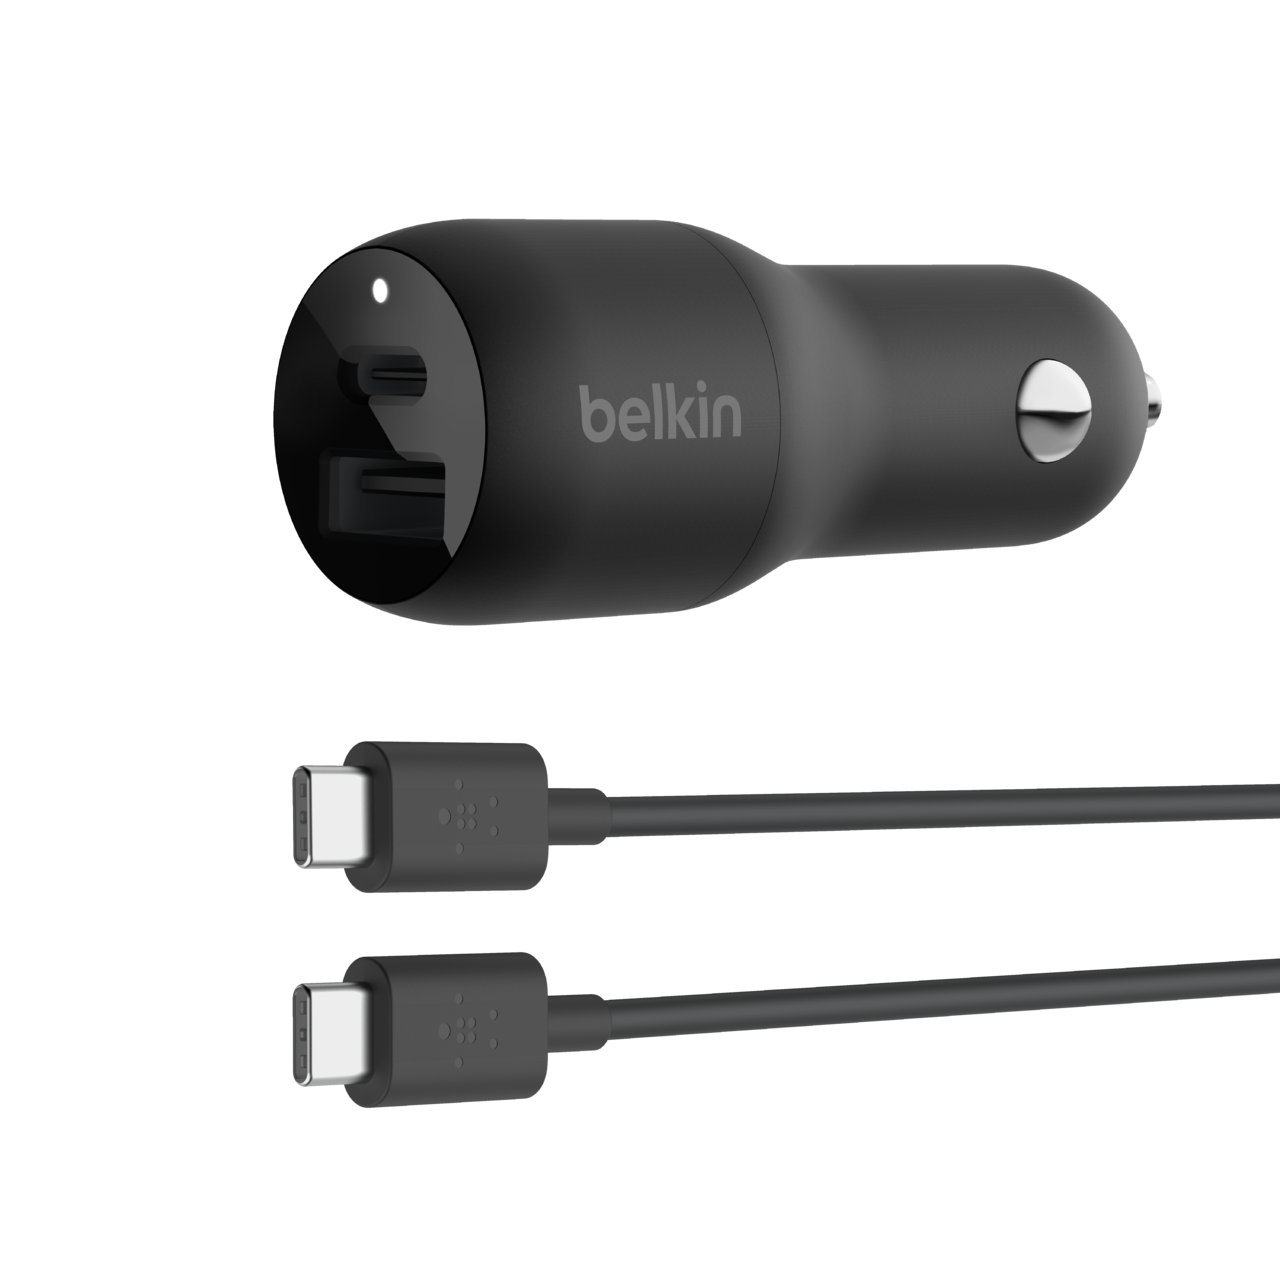 Belkin - BOOST↑CHARGE™ Chargeur secteur USB-C® PD 3.0 avec PPS (30 W) et  câble USB-C® avec connecteur Lightning